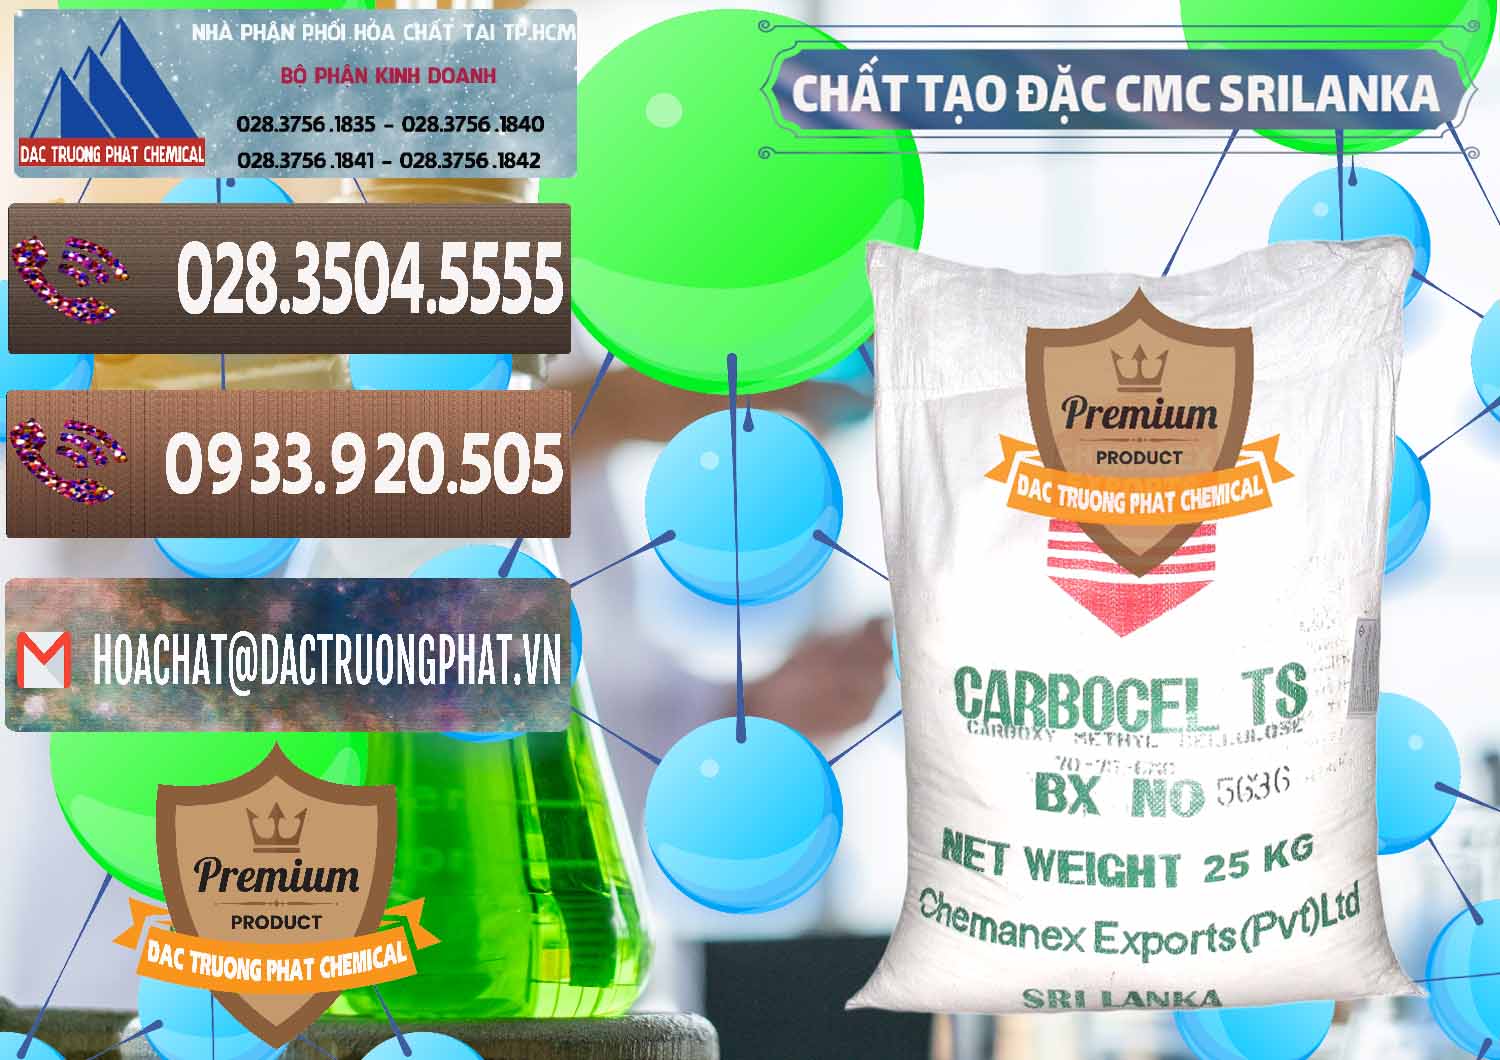 Cty bán ( cung cấp ) Chất Tạo Đặc CMC - Carboxyl Methyl Cellulose Srilanka - 0045 - Công ty phân phối - cung cấp hóa chất tại TP.HCM - hoachatviet.net